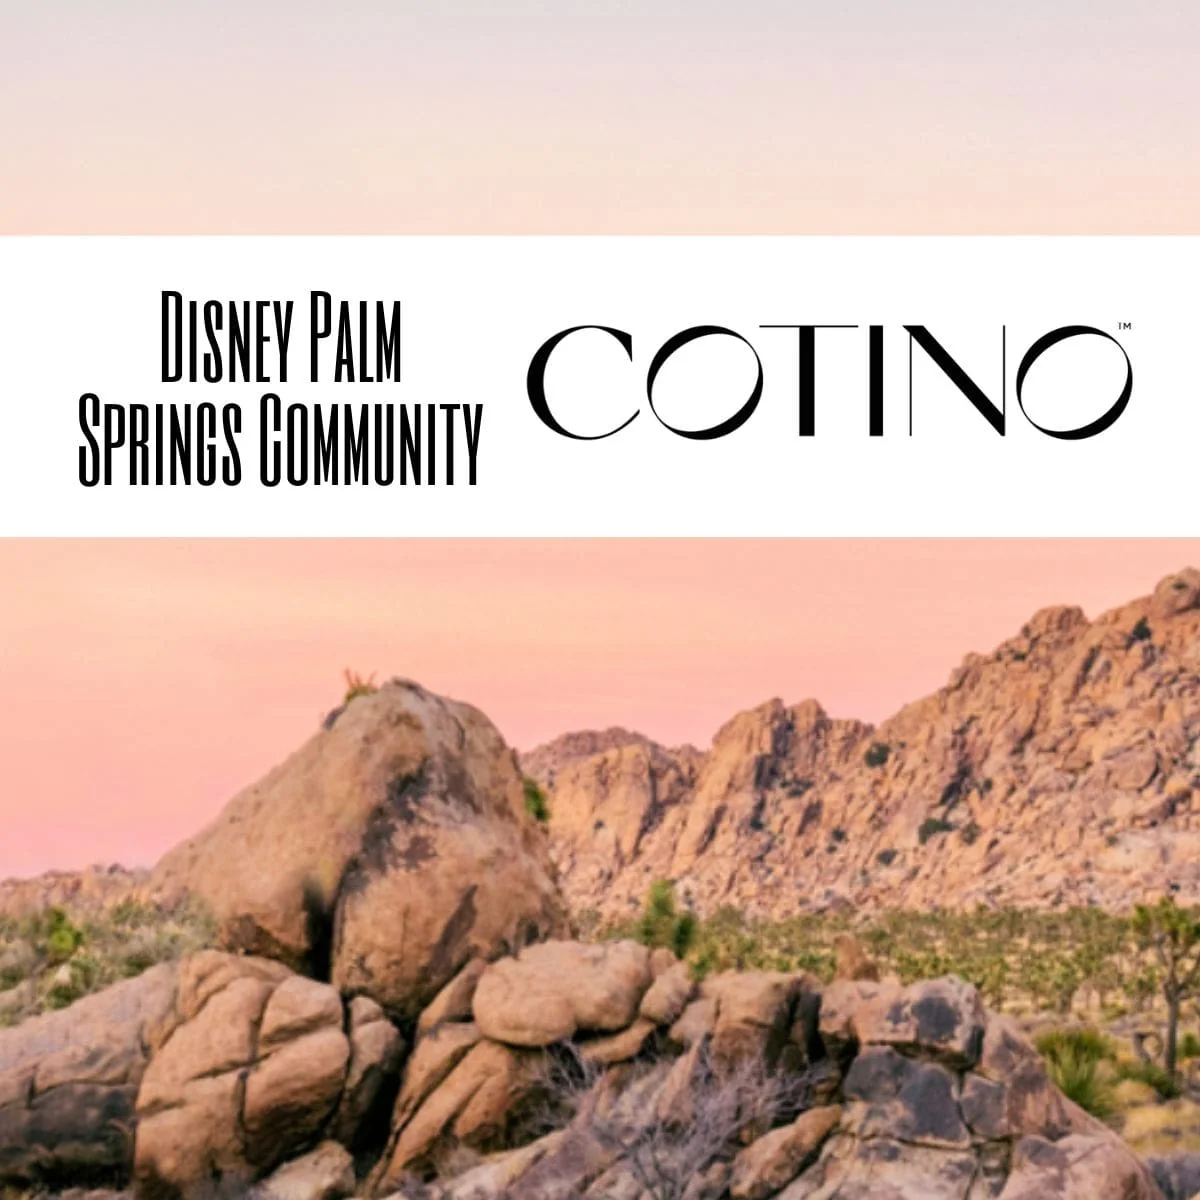 Disney Palm Springs Community: Cotino